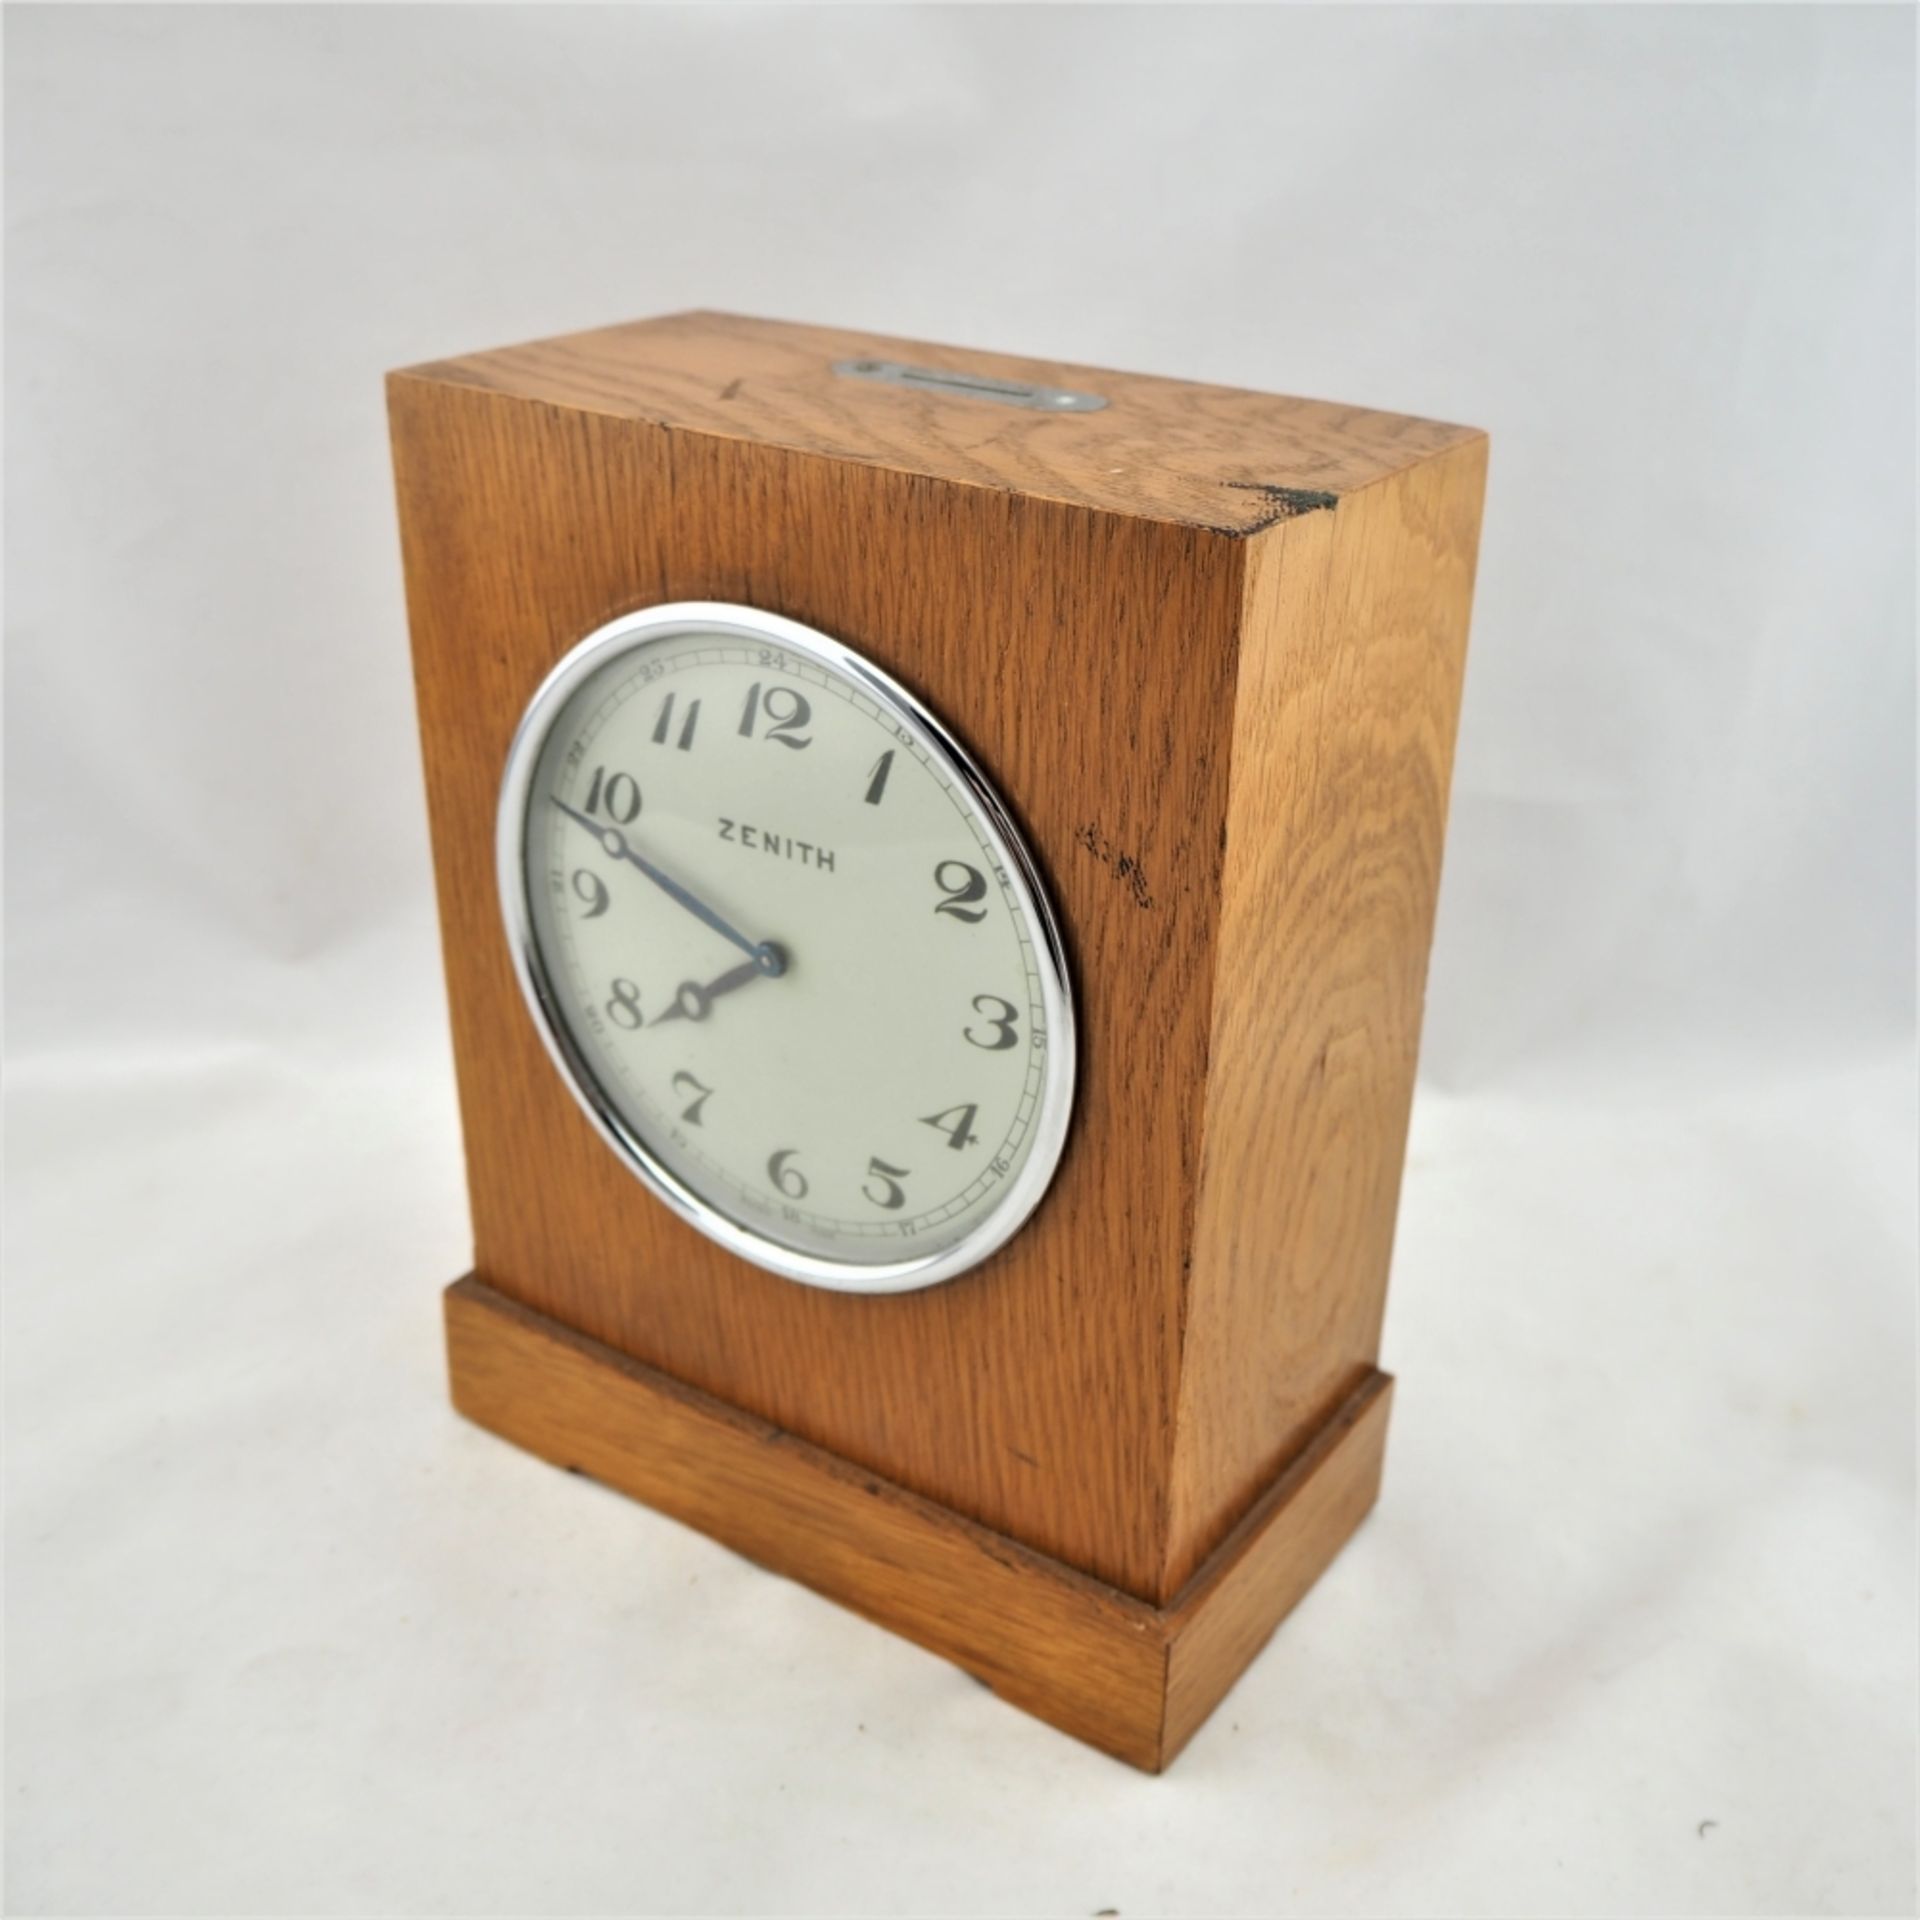 Seltene "Zenith" Spareruhr, 30er JahreGehäuse aus Holz (Eiche), mittig eingebautes Uhrwe